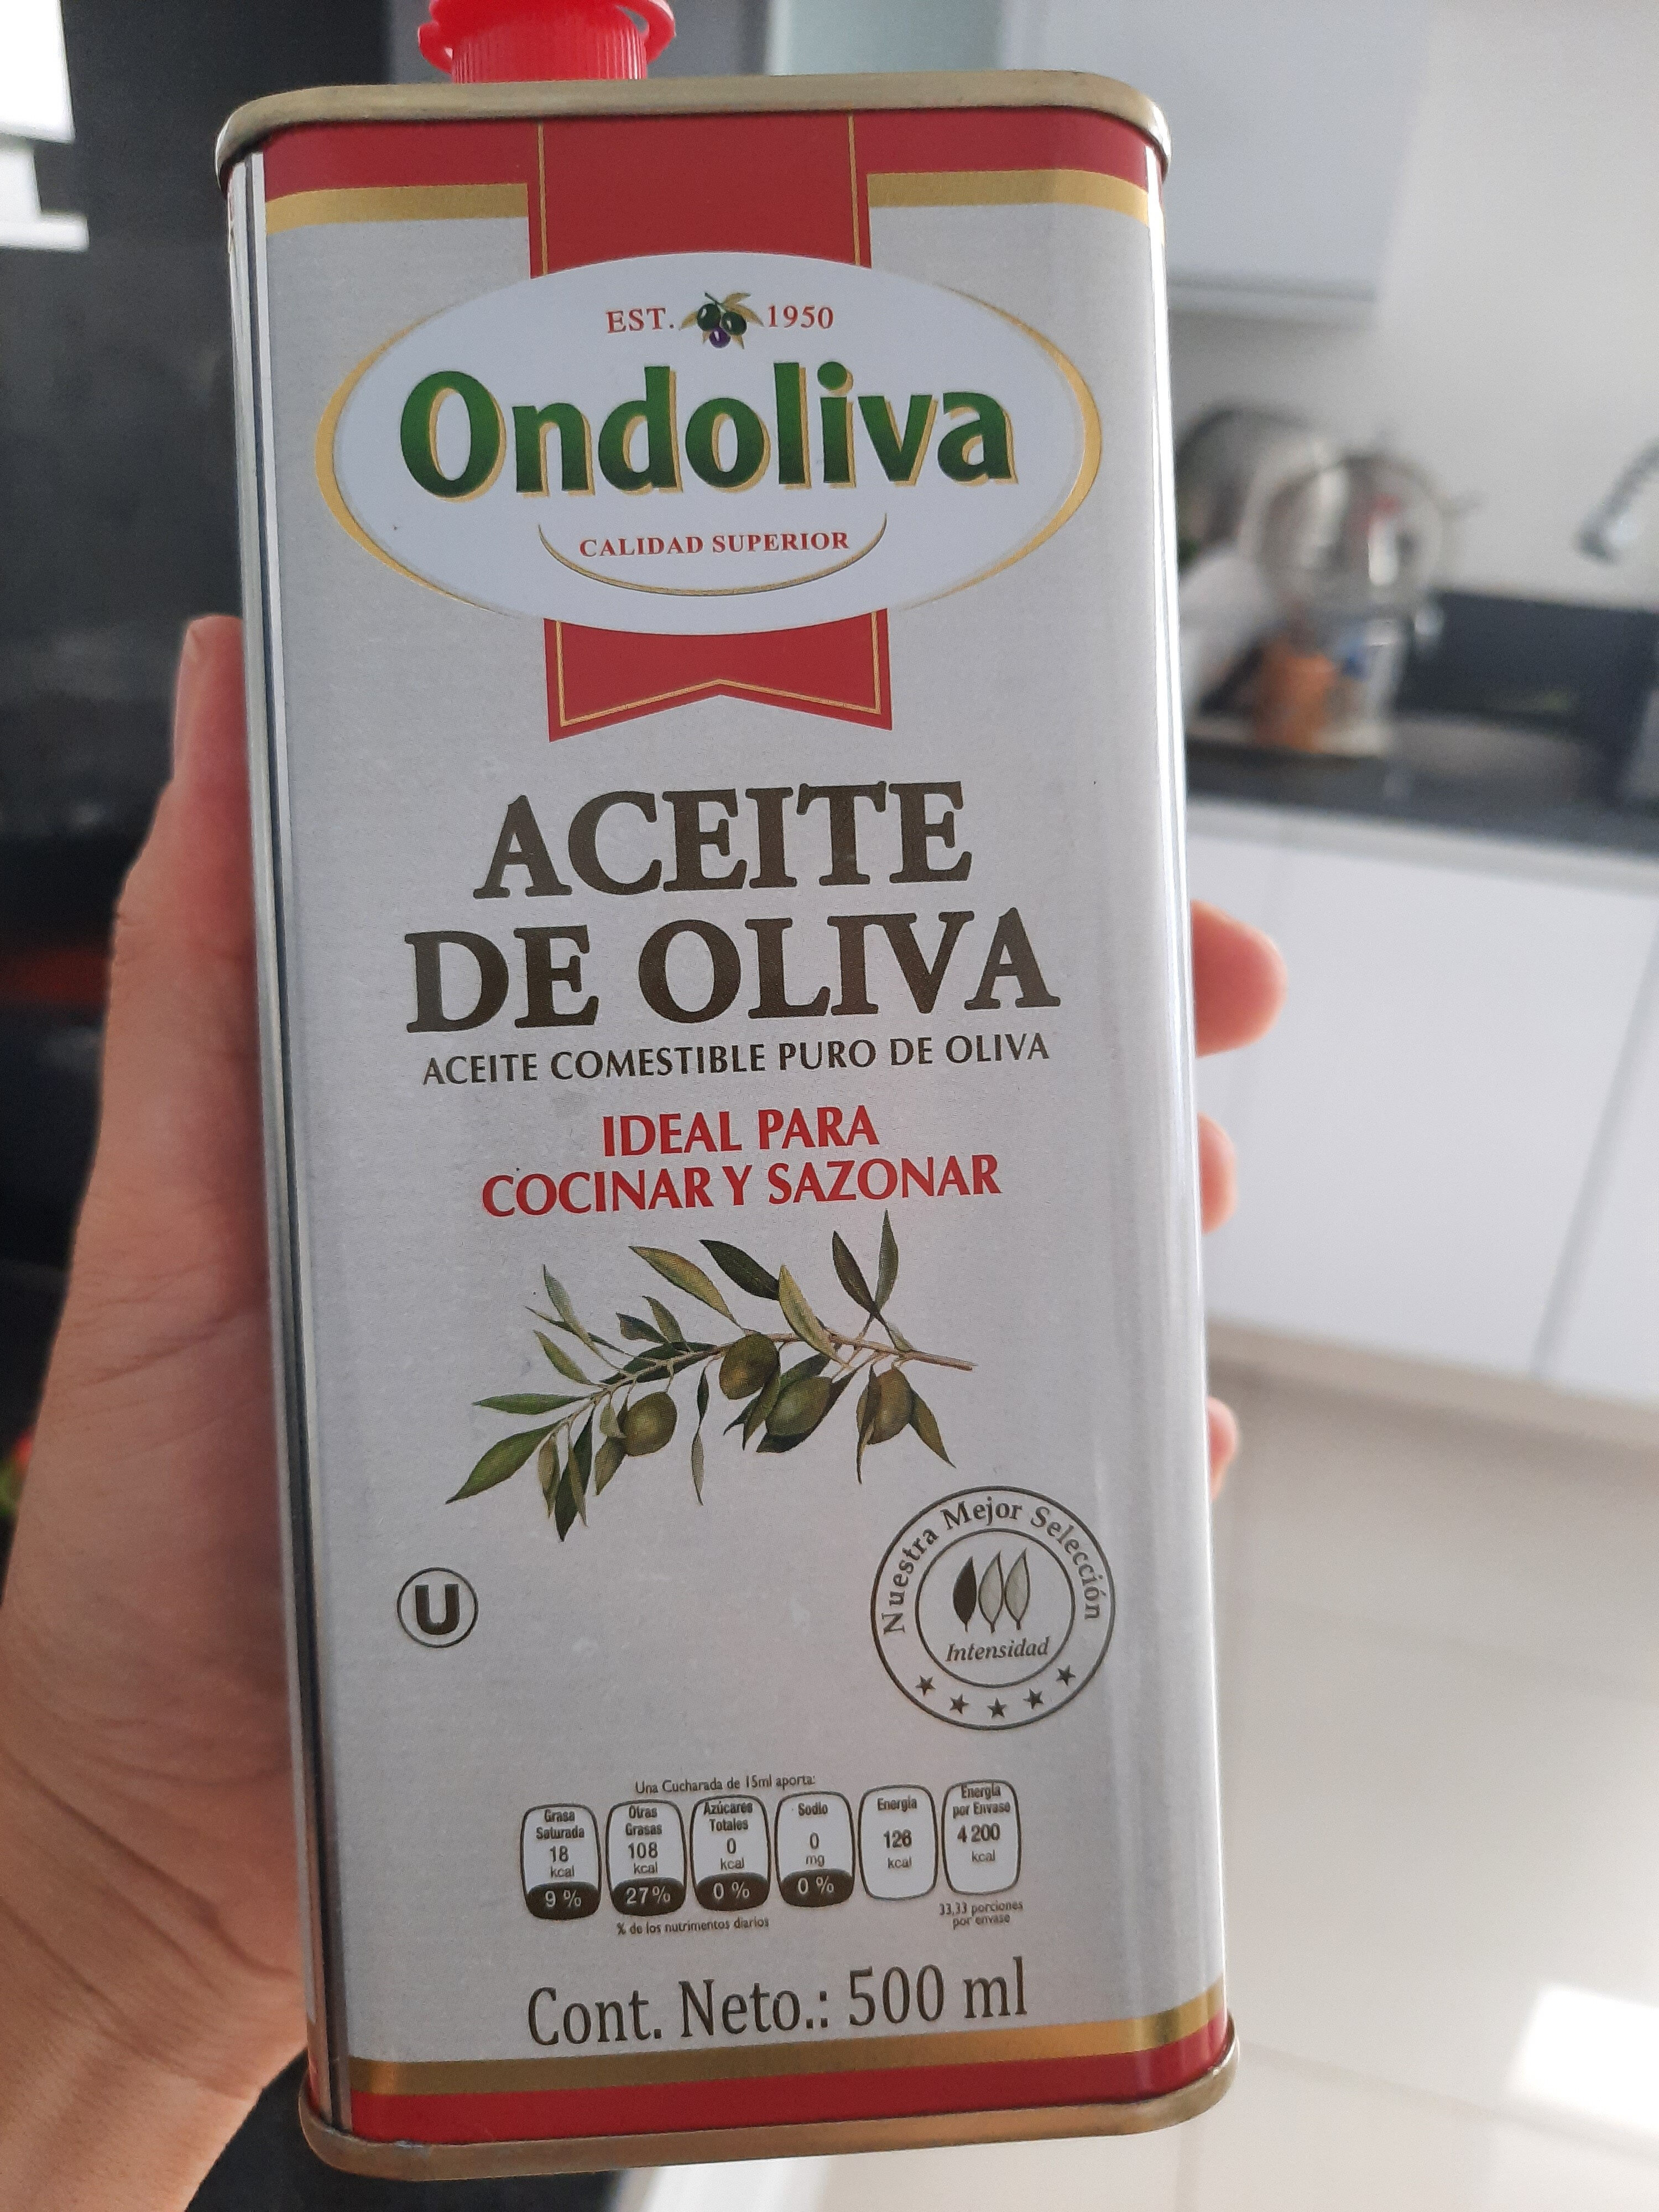 Aceite de oliva - Product - es